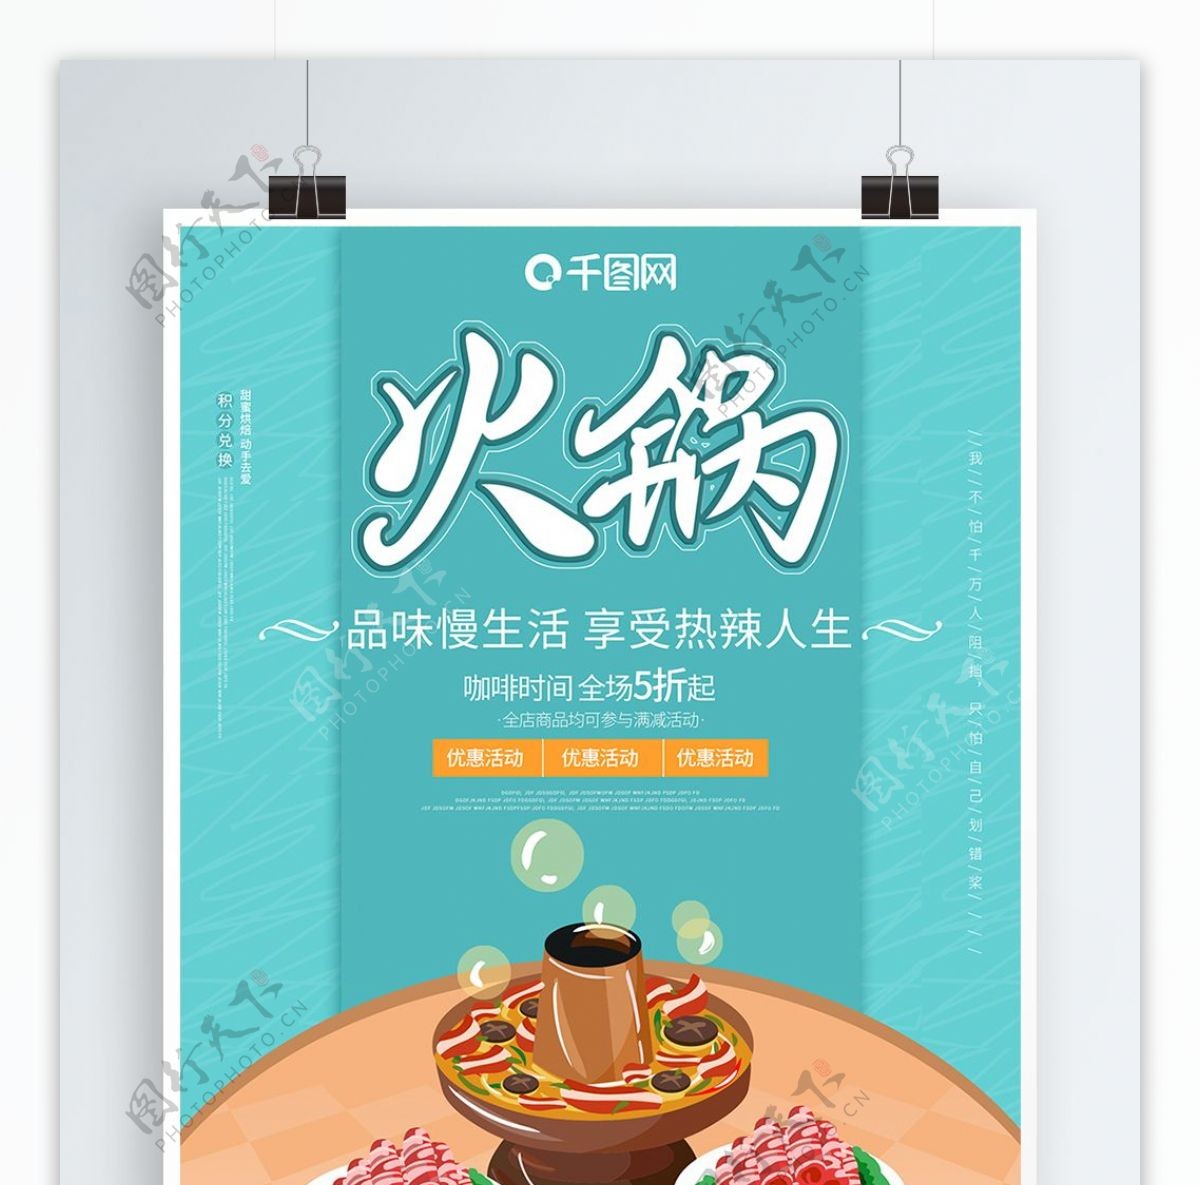 原创字体创意火锅美食促销食物小清新海报